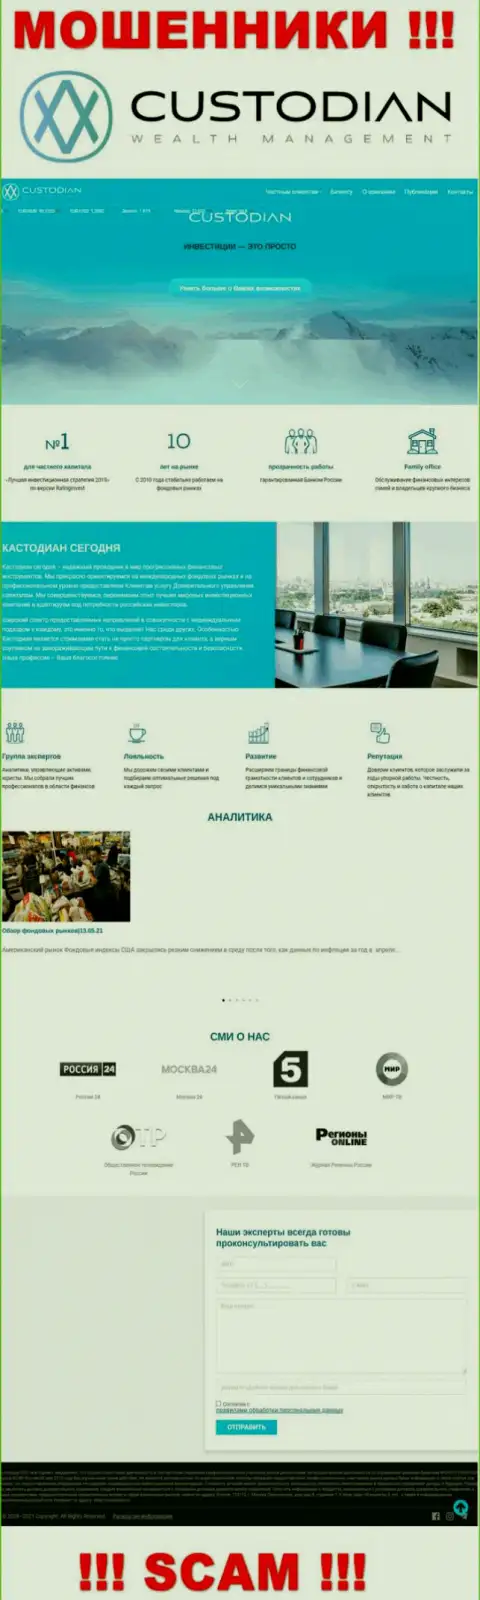 Скрин официального сайта противоправно действующей организации Кустодиан